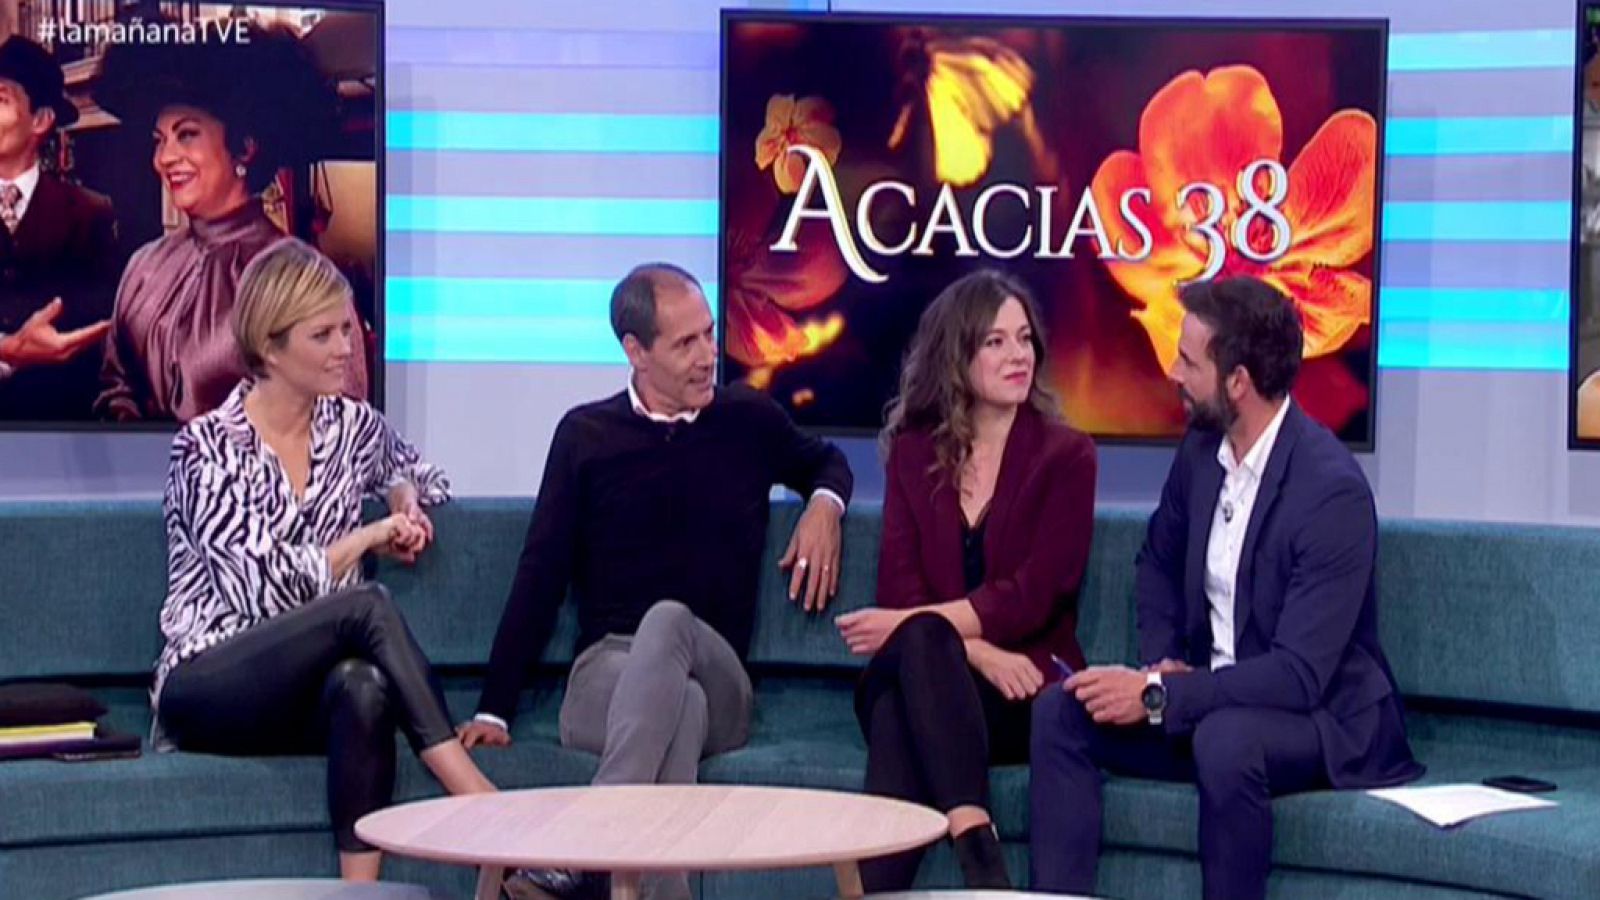 Acacias 38 - Manuel Bandera y Clara Garrido hablan de sus personajes en 'La Mañana'